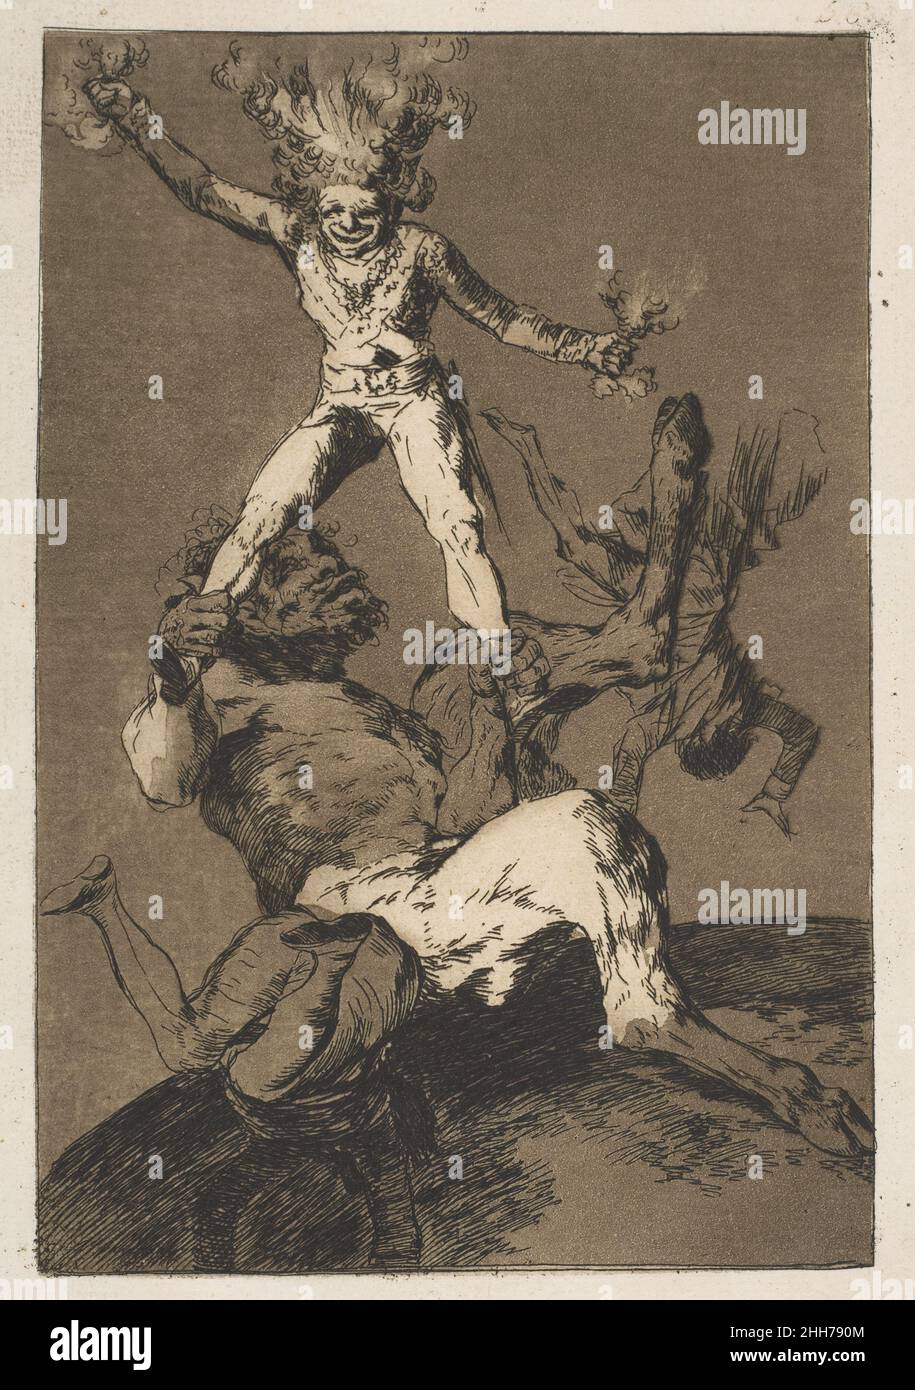 Plato 56 de 'Los Caprichos': Subir y bajar (Subir y bajar.) 1799 Goya (Francisco de Goya y Lucientes) Español. Plato 56 de 'Los Caprichos': Subir y bajar (Subir y bajar.) 334183 Foto de stock